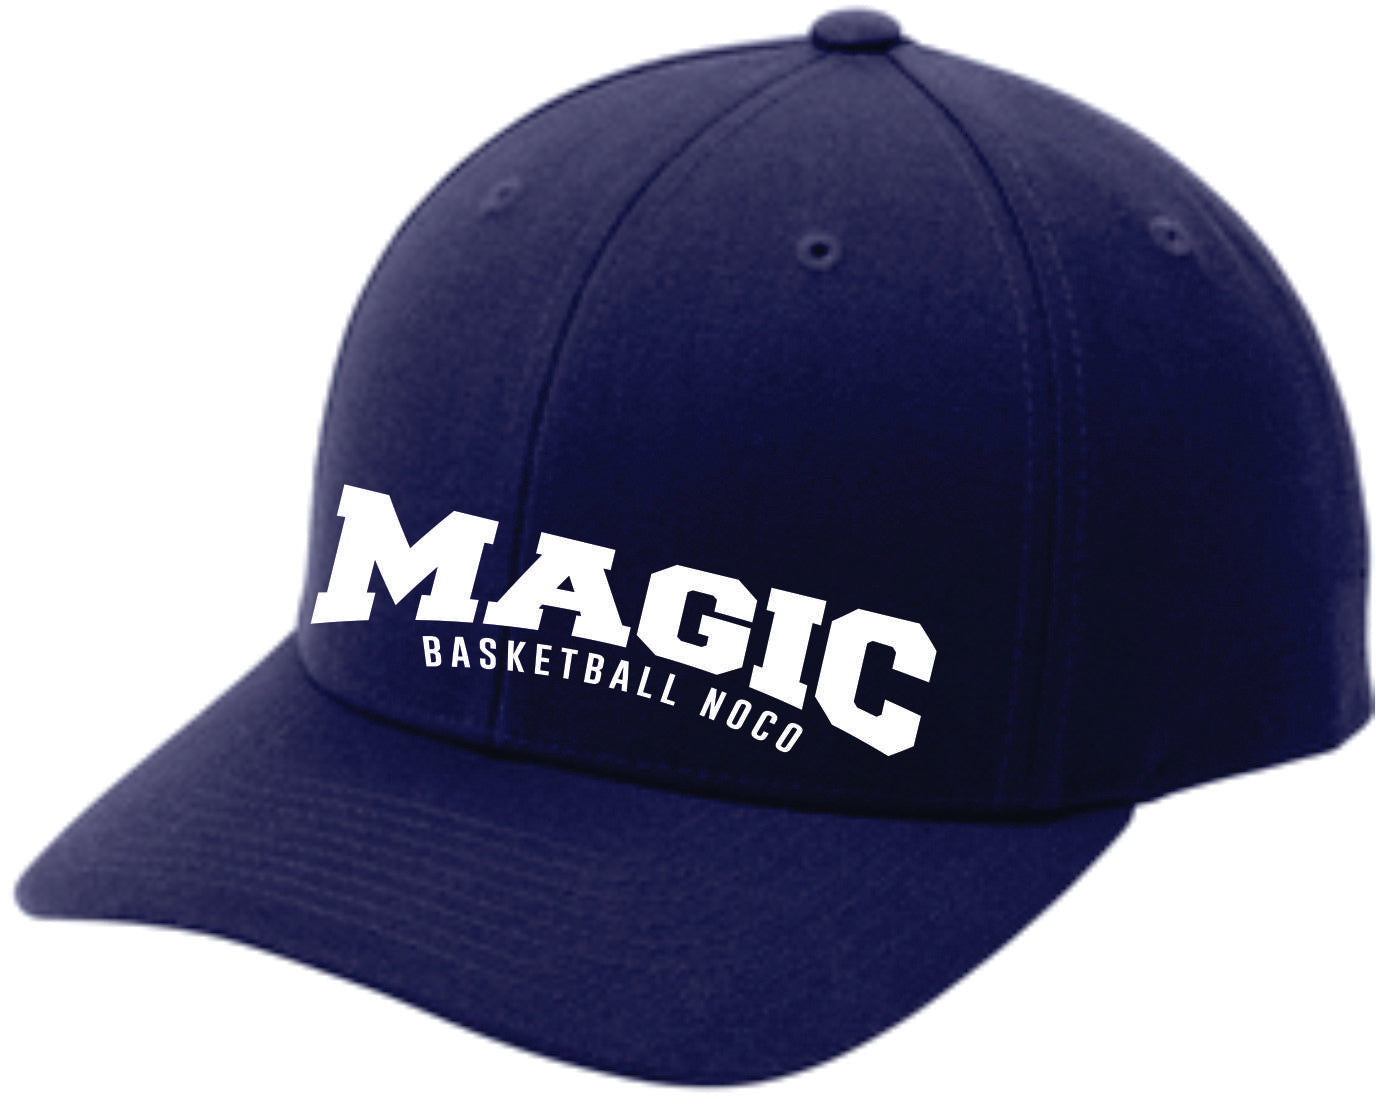 Magic Basketball Fanwear Hats